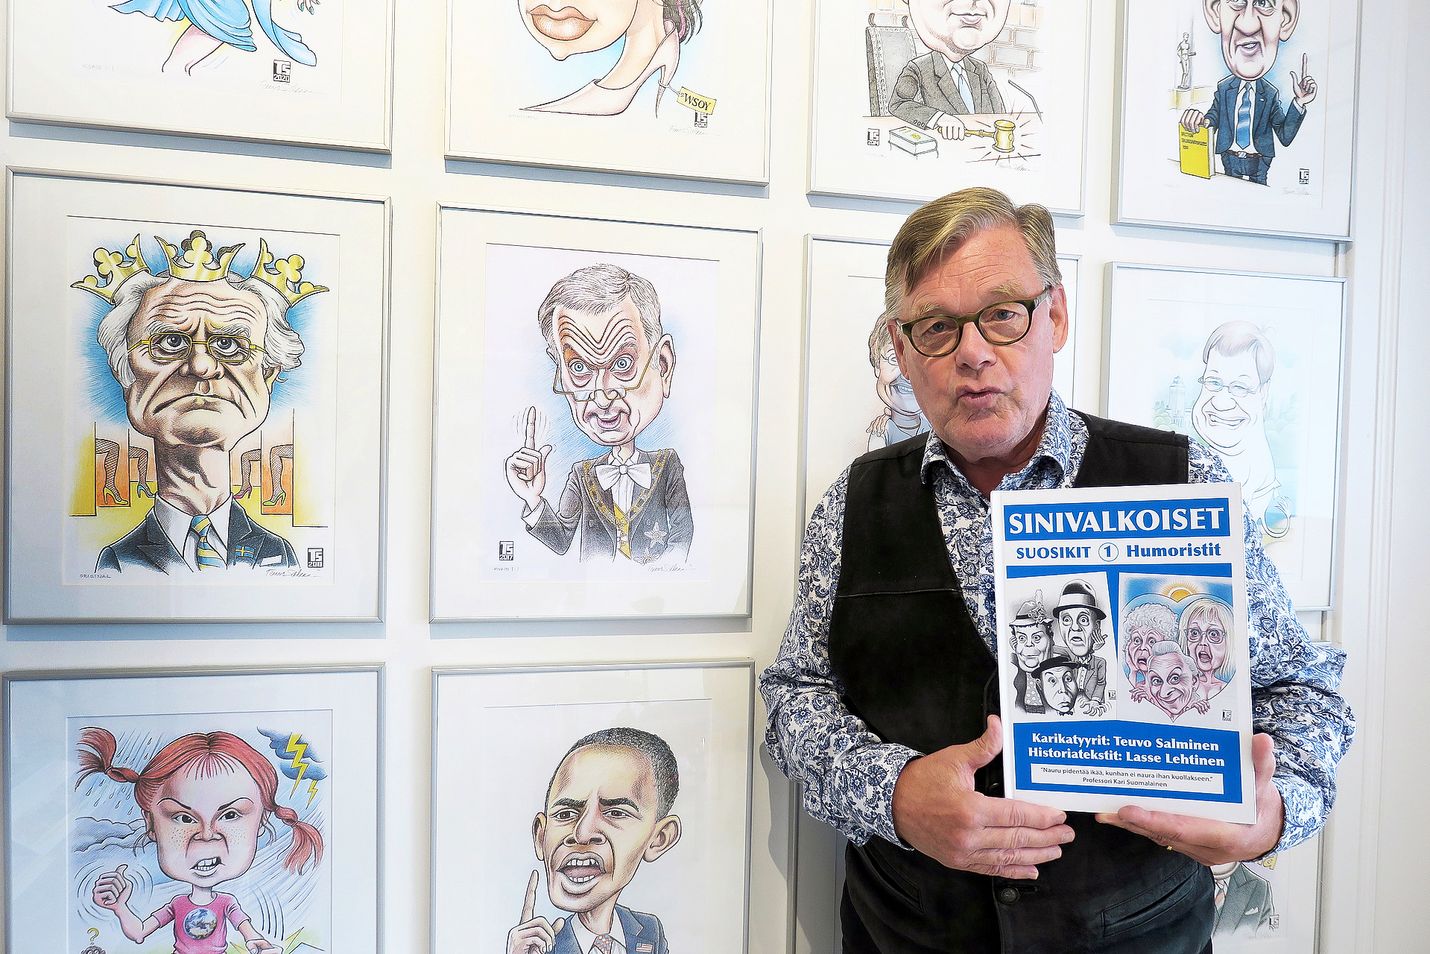 Yli 30 vuotta karikatyyrejä tehneeltä Teuvo Salmiselta ilmestyy ensimmäinen kirja vasta nyt. Suomalaisia humoristeja esittelevän karikatyyrikirjan tekstit on kirjoittanut Lasse Lehtinen.